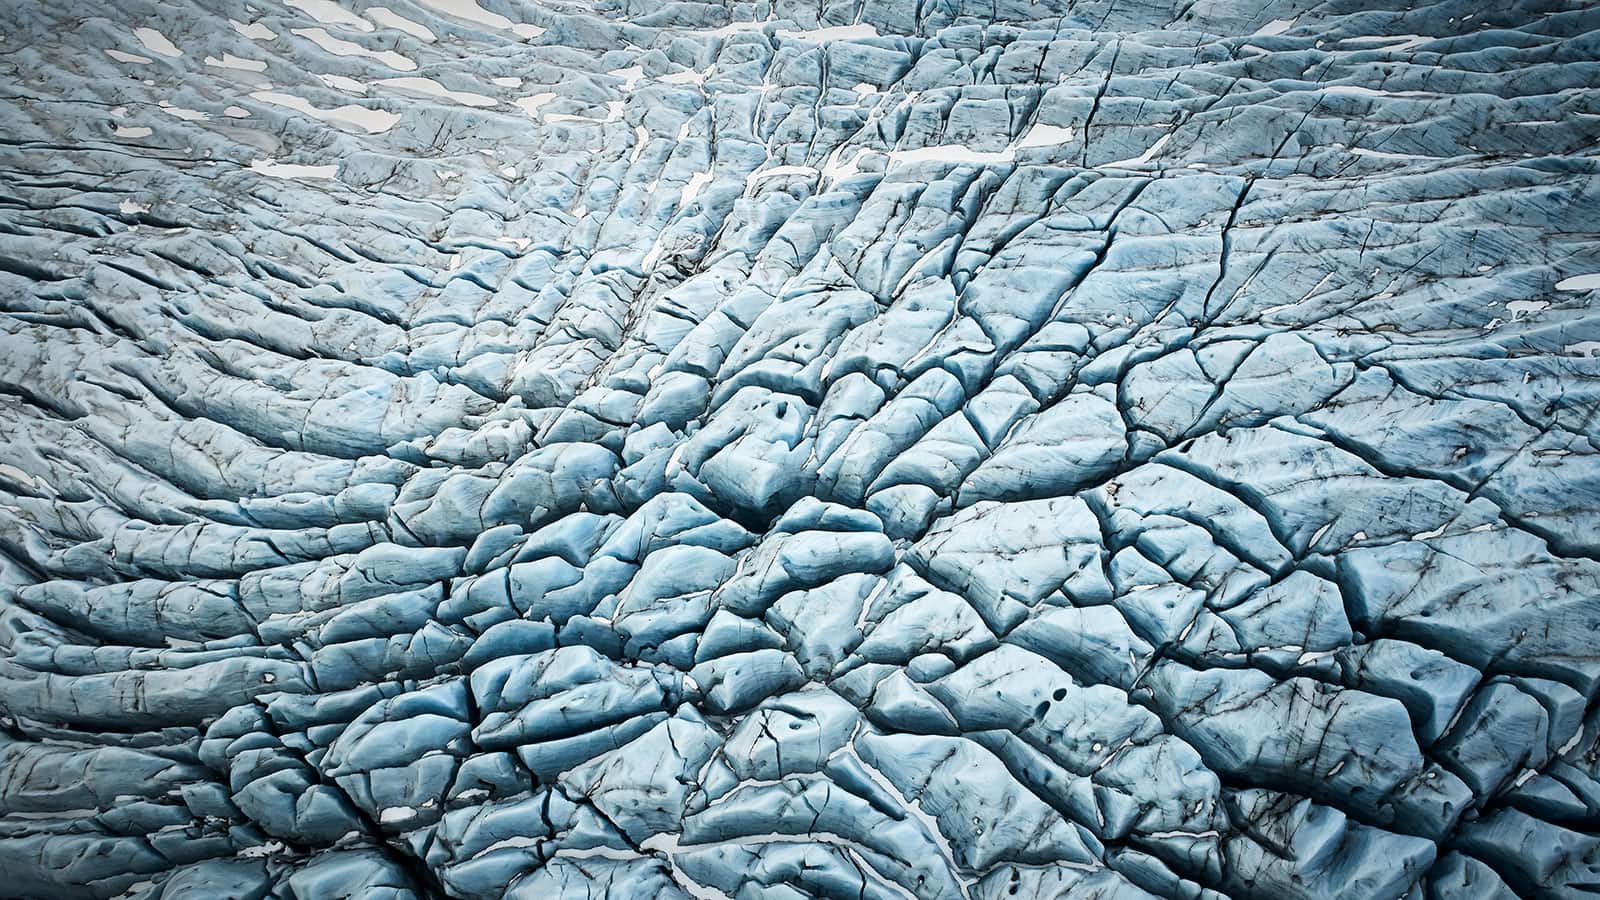 "Bursting Ice" Bilddrucke in höchster Qualität mit der ChromaLuxe Technologie